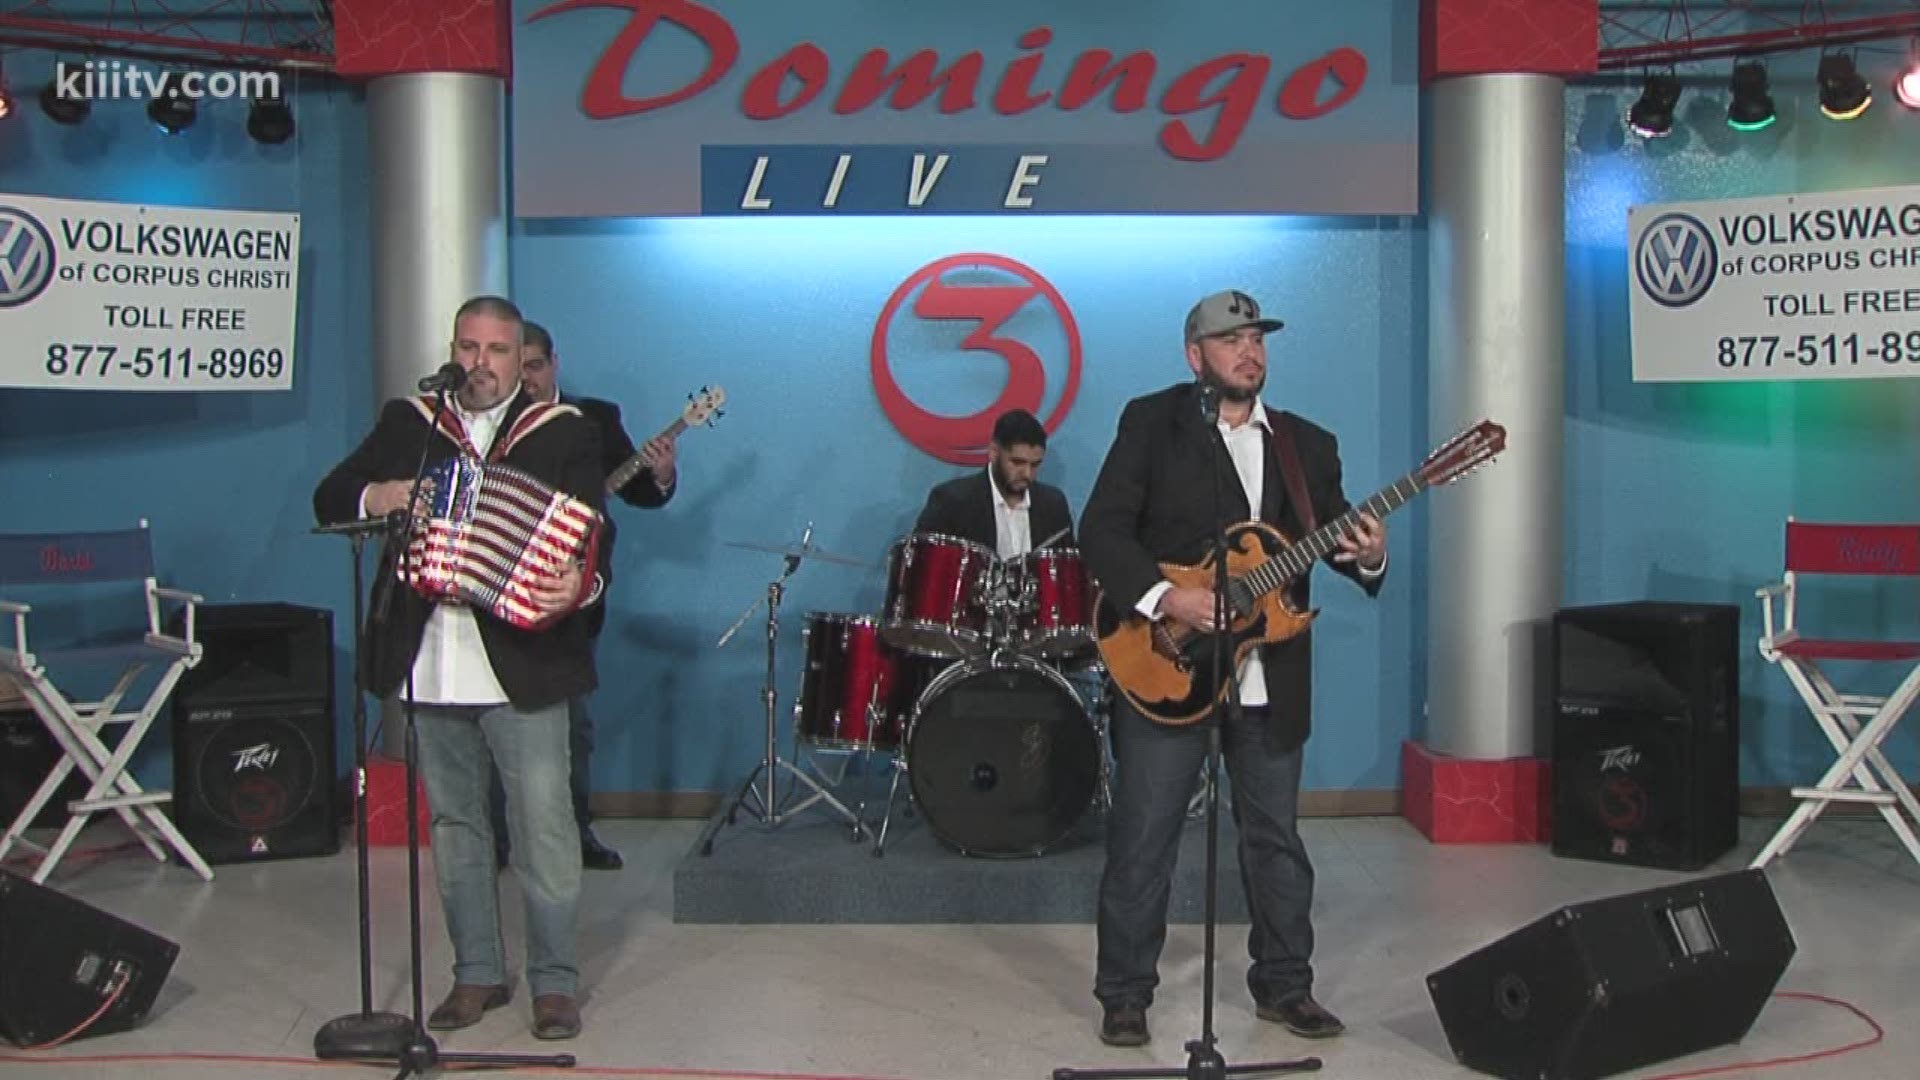 Conjunto Senzzible from Houston Texas performs their third song on Domingo Live, "Esta Tristeza Mia."